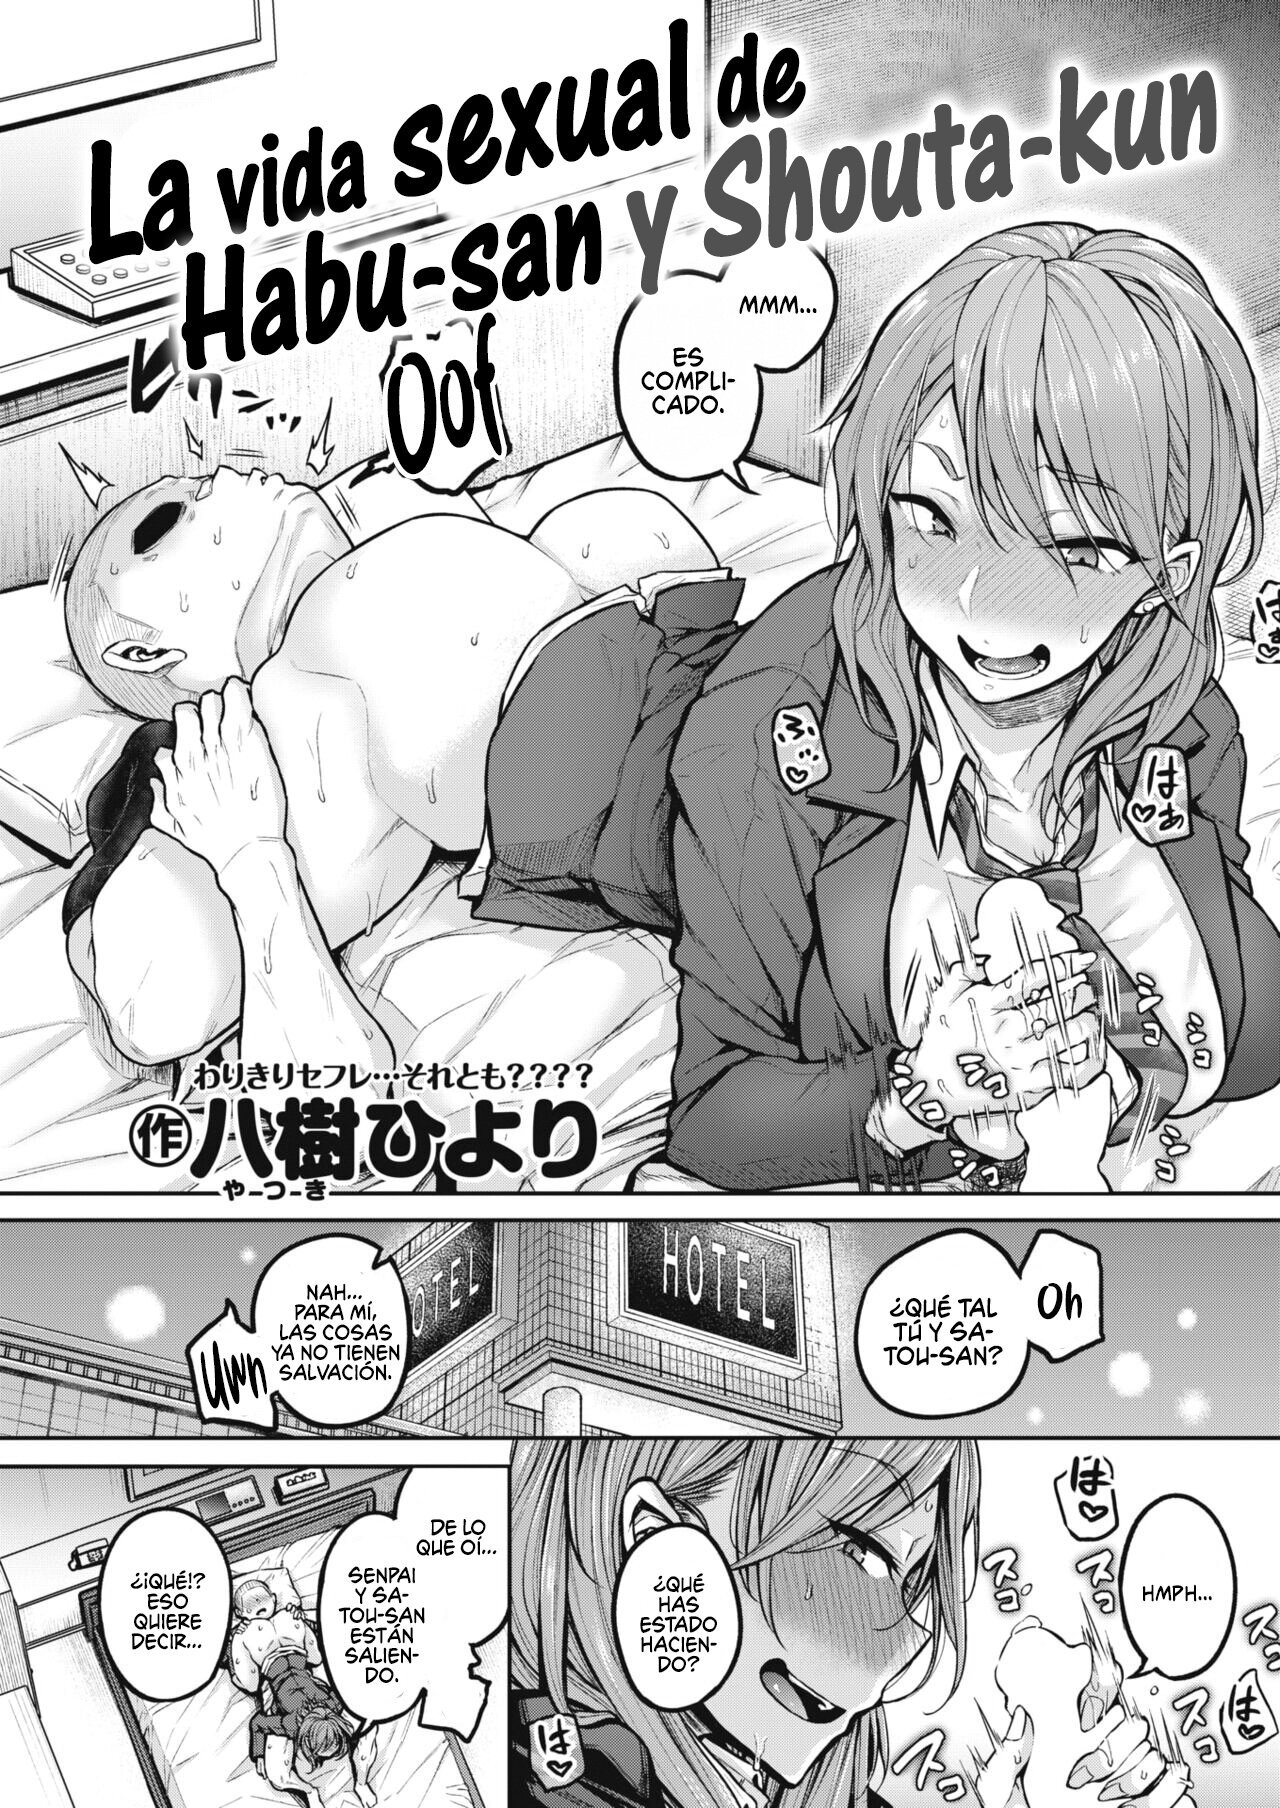 La vida sexual de Habu-san y Shouta-kun - 2